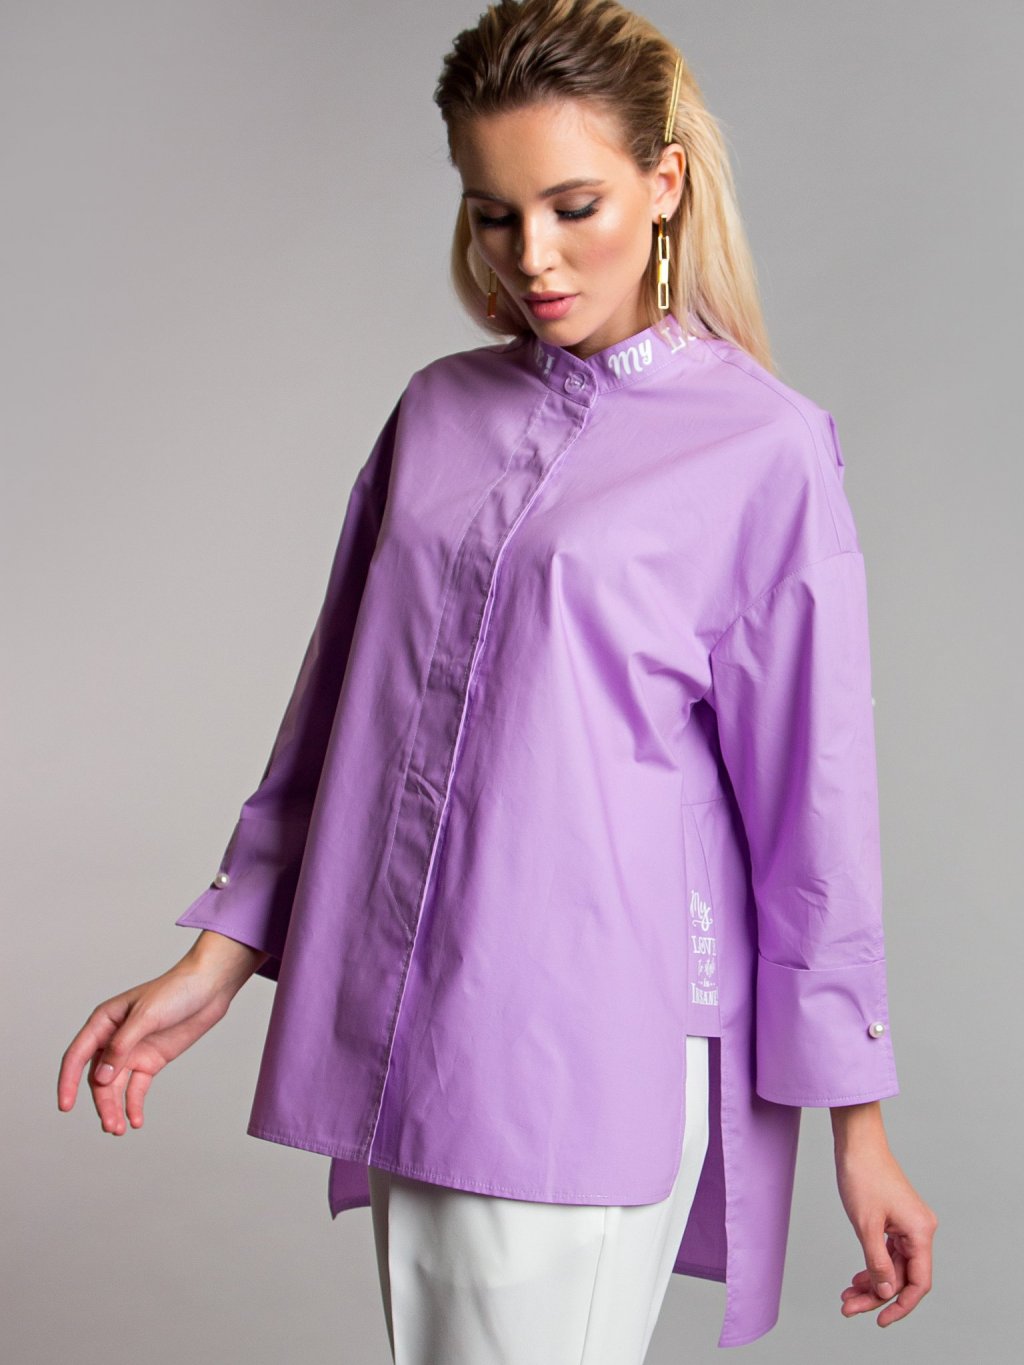 Блуза с надписями цвет cирень Б-115-4 - 1